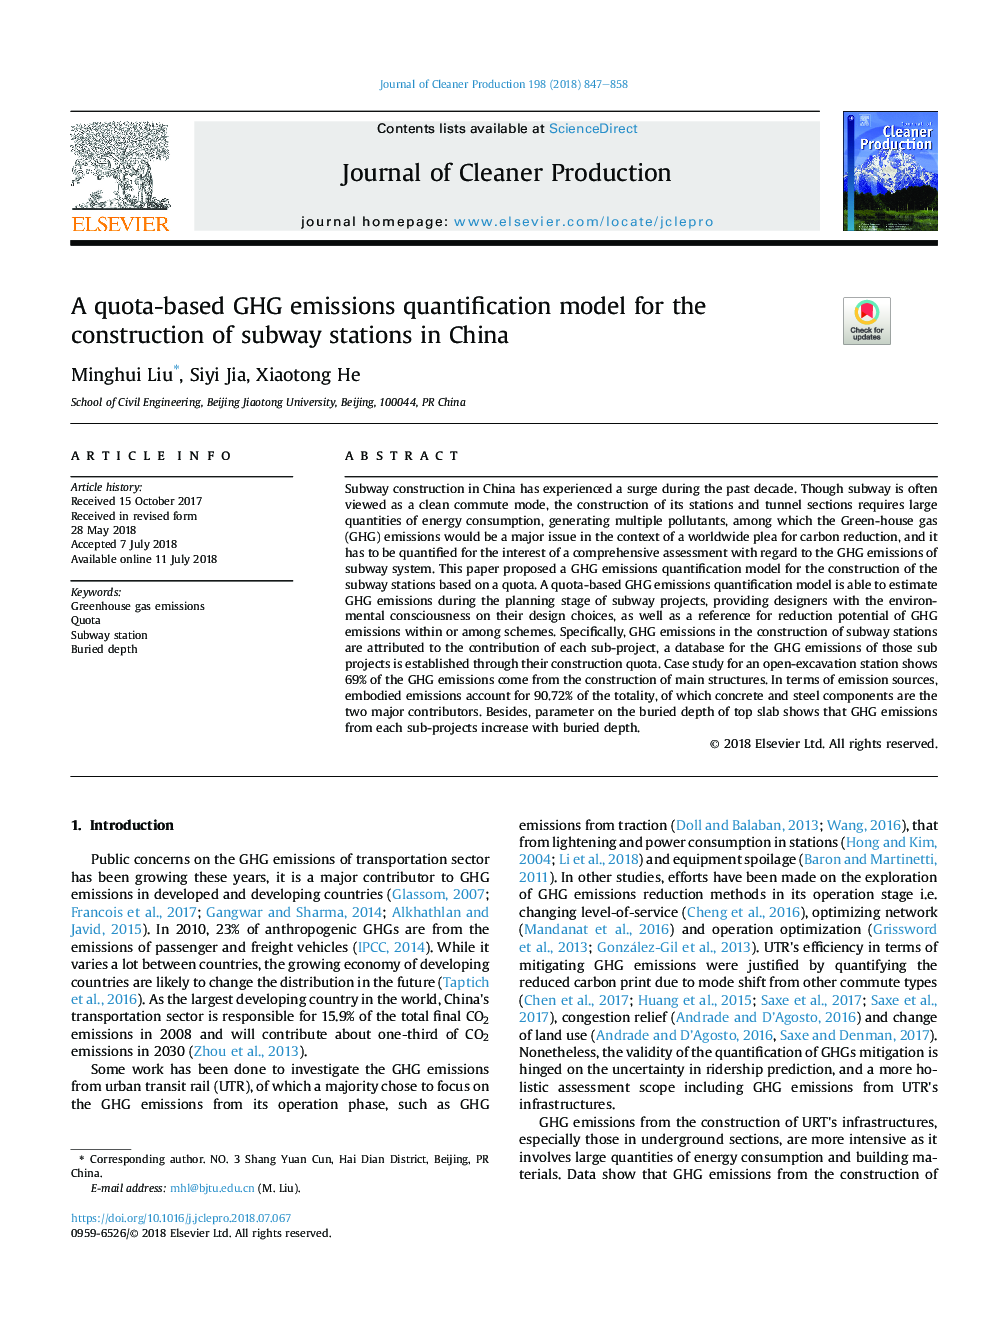 یک مدل کوانتیزیکی انتشار گازهای گلخانه ای مبتنی بر سهمیه بندی برای ساخت ایستگاه های مترو در چین 